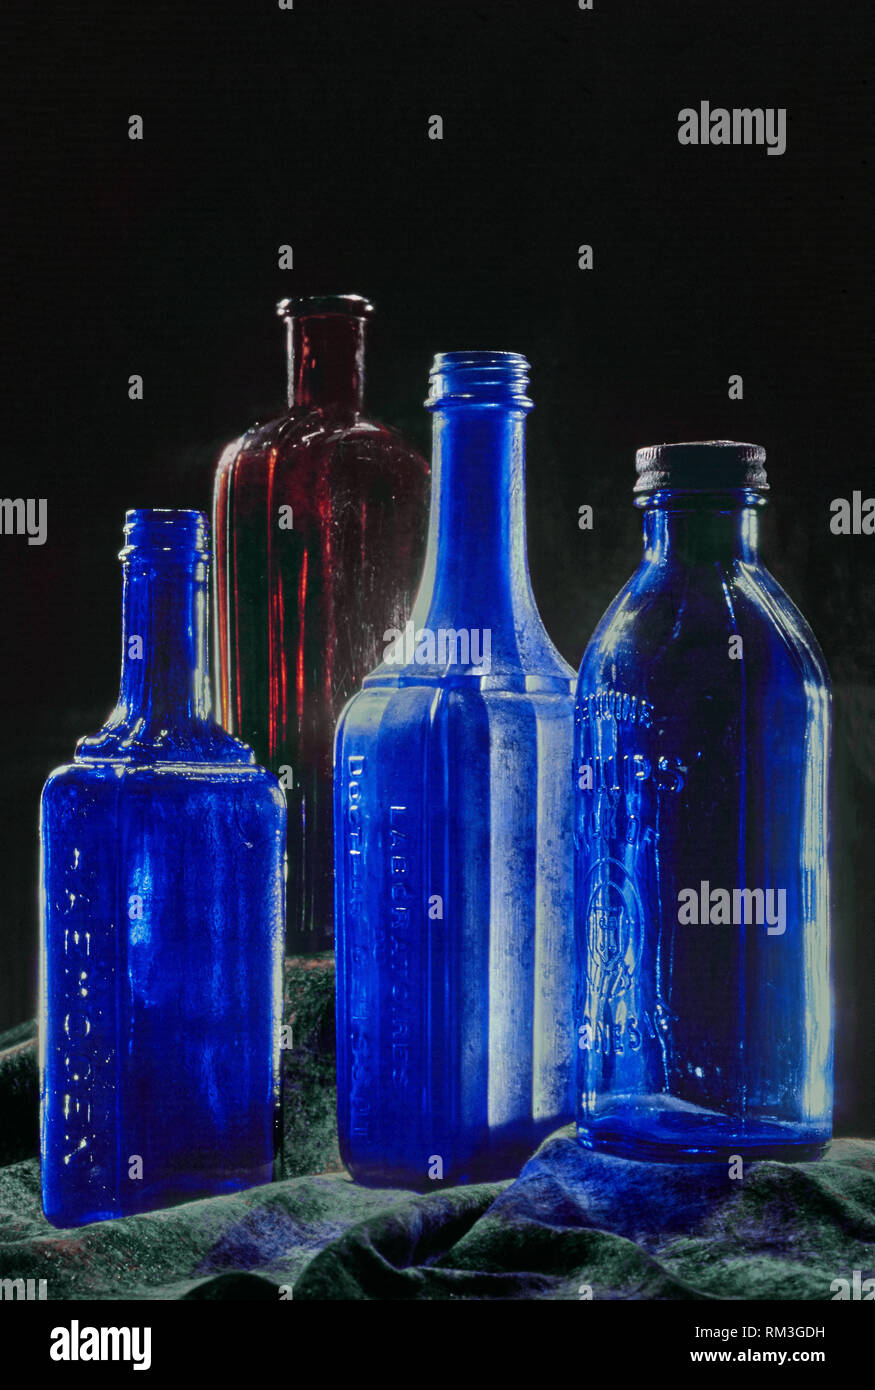 https://c8.alamy.com/comp/RM3GDH/milk-of-magnesia-blue-bottles-india-asia-RM3GDH.jpg